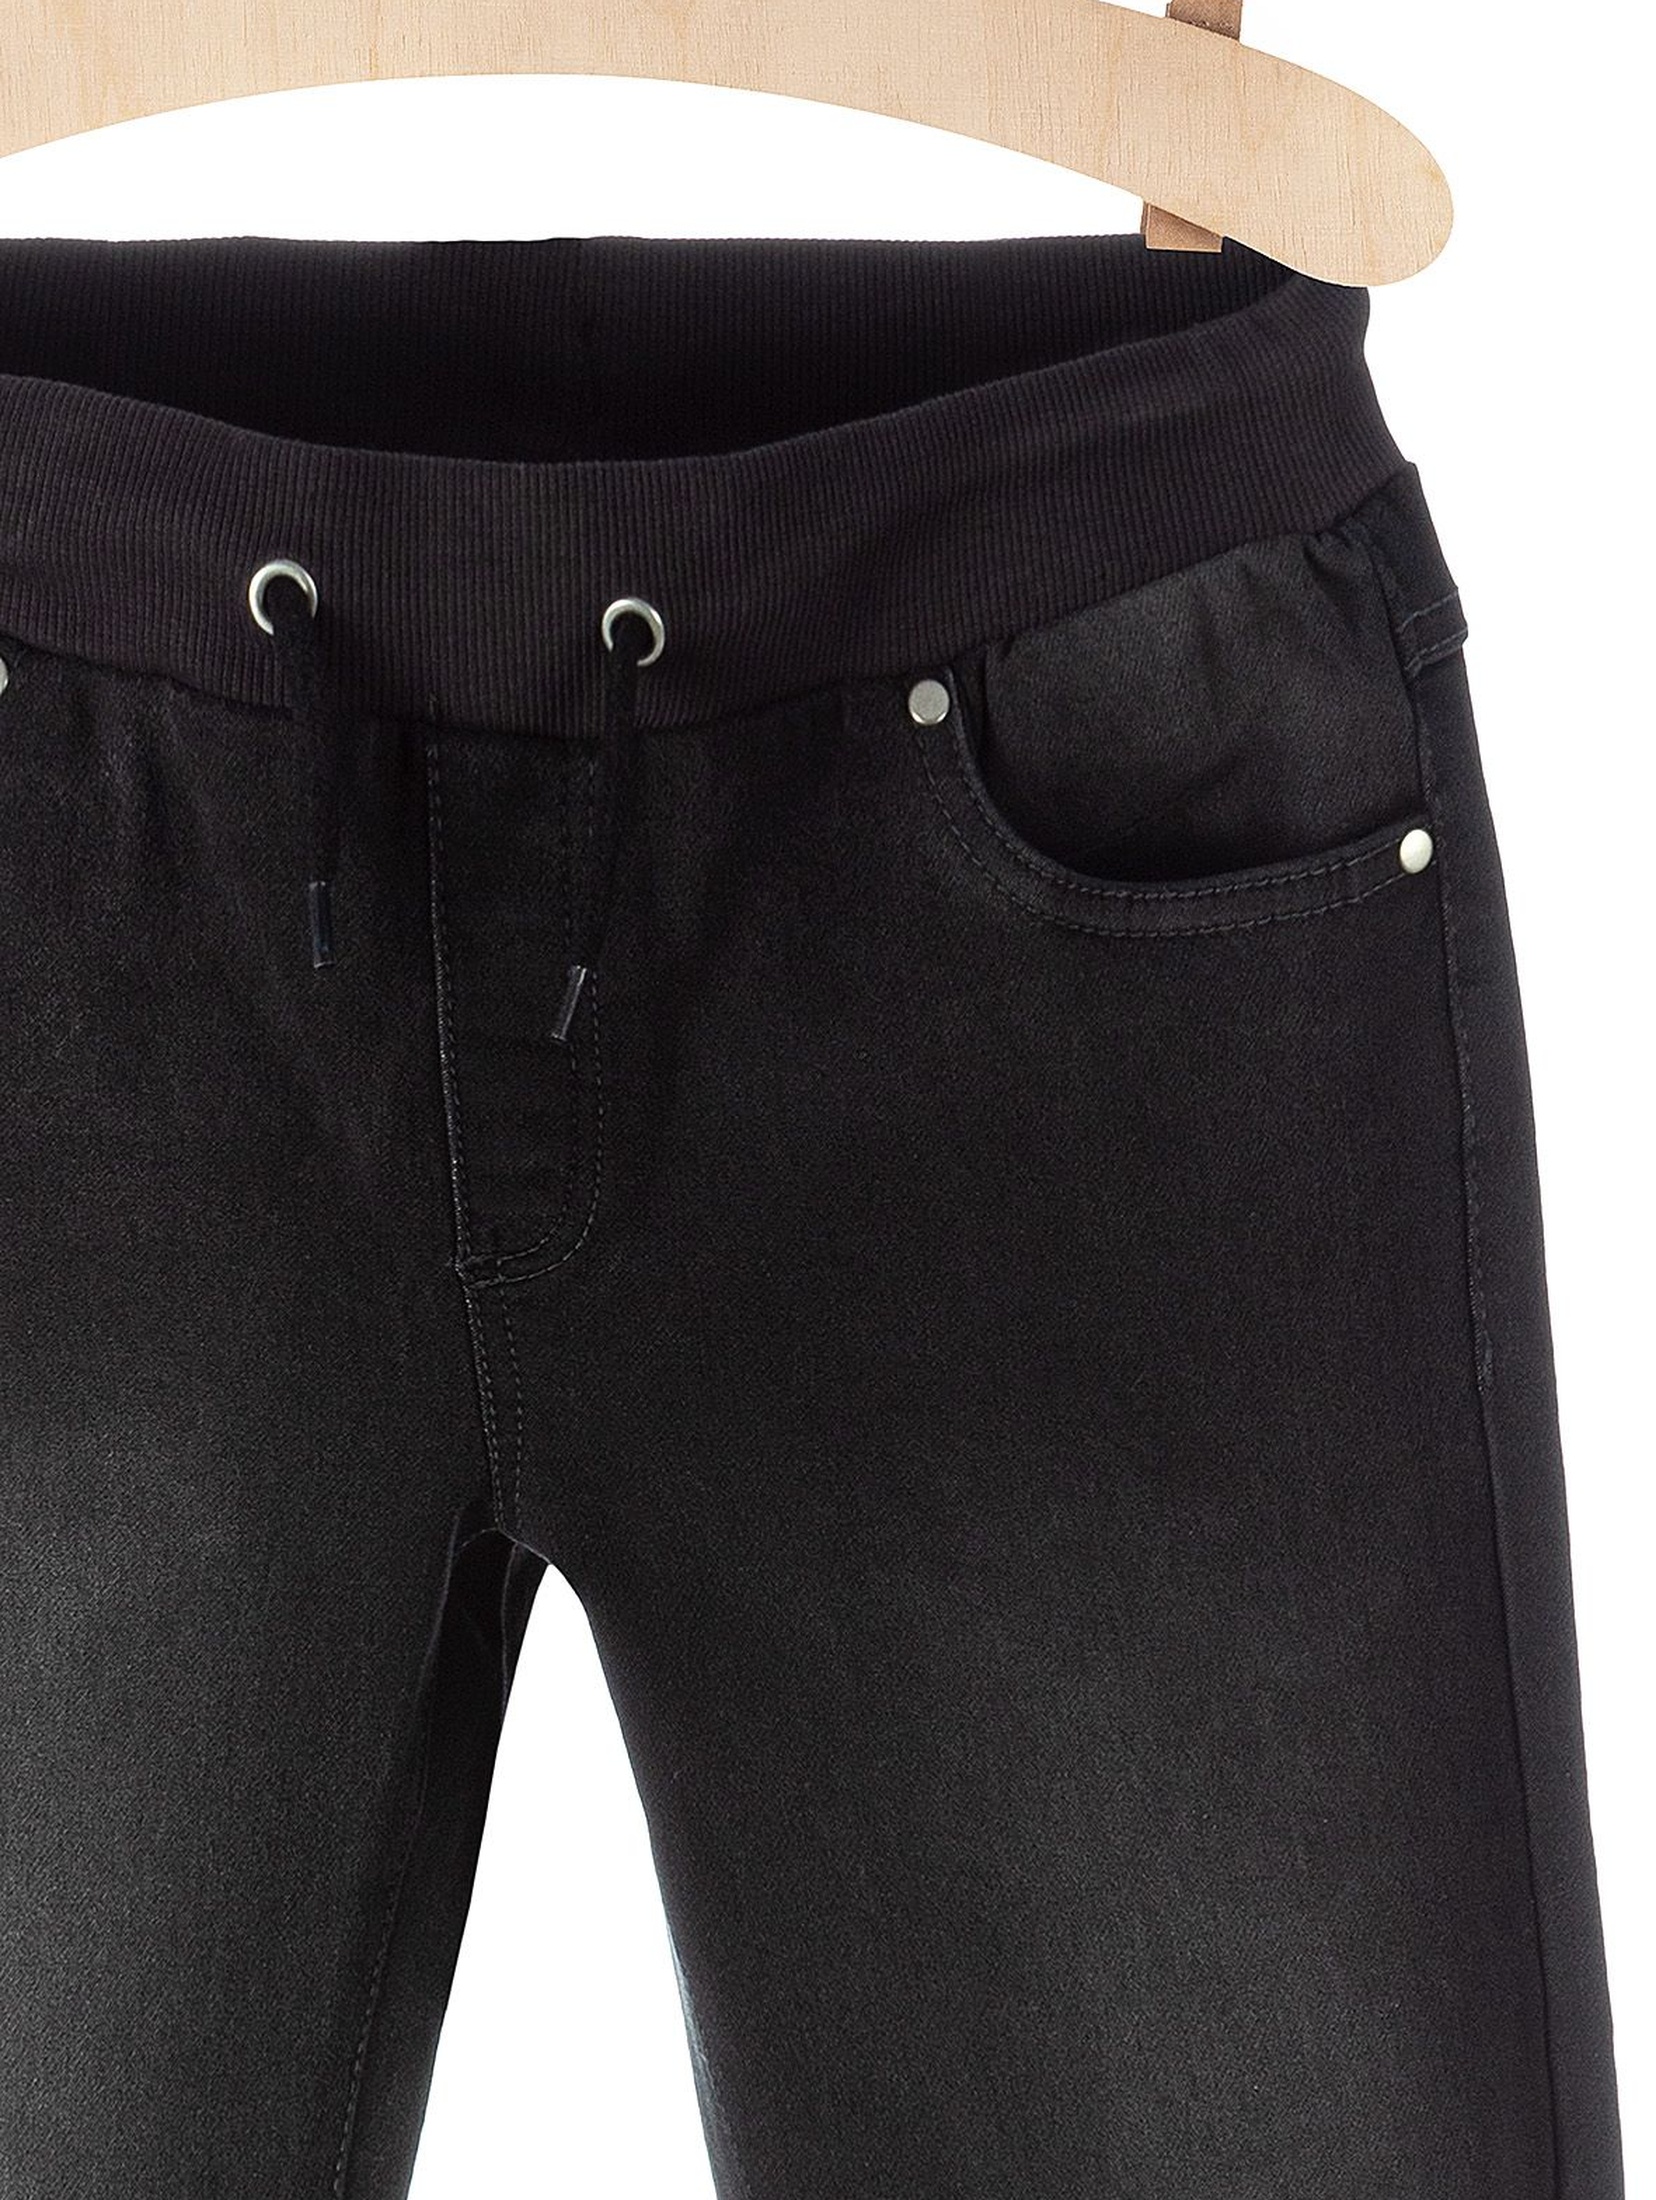 Spodnie chłopięce czarne jeansowe